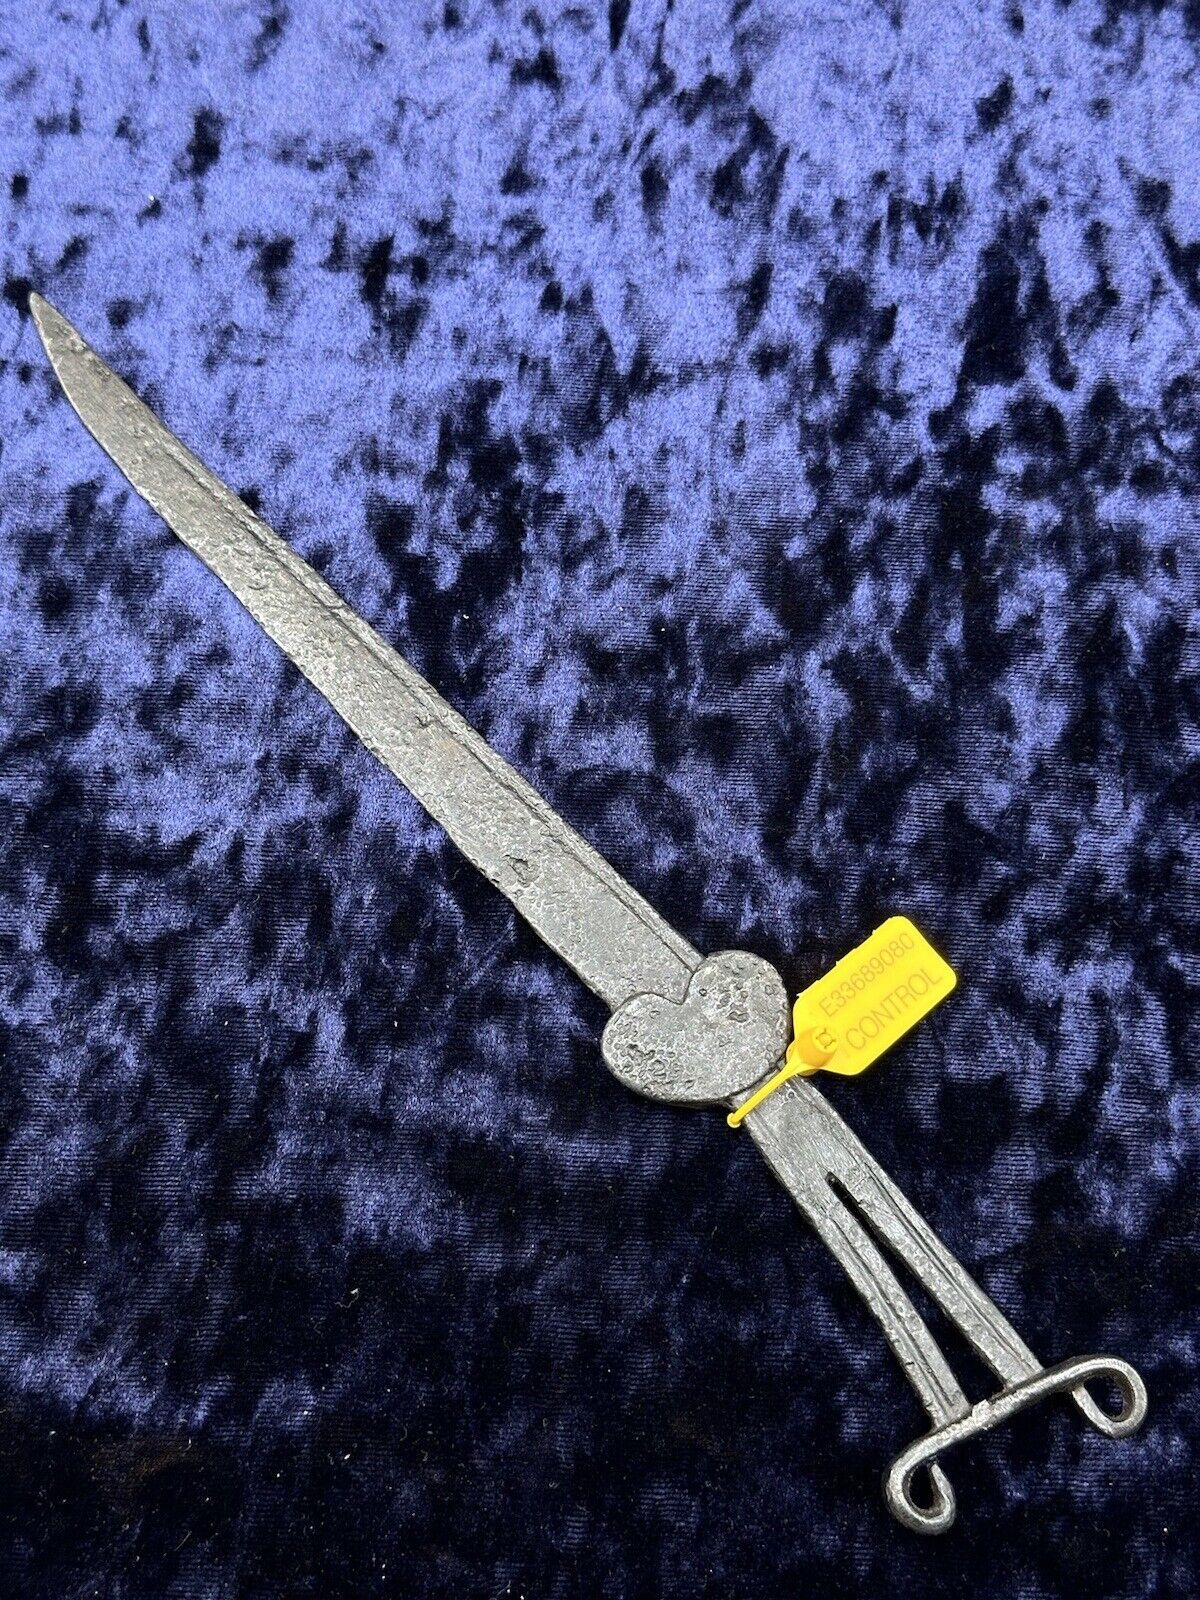 Ancient Scythian Knife circa 4th - 2nd centuries BC.